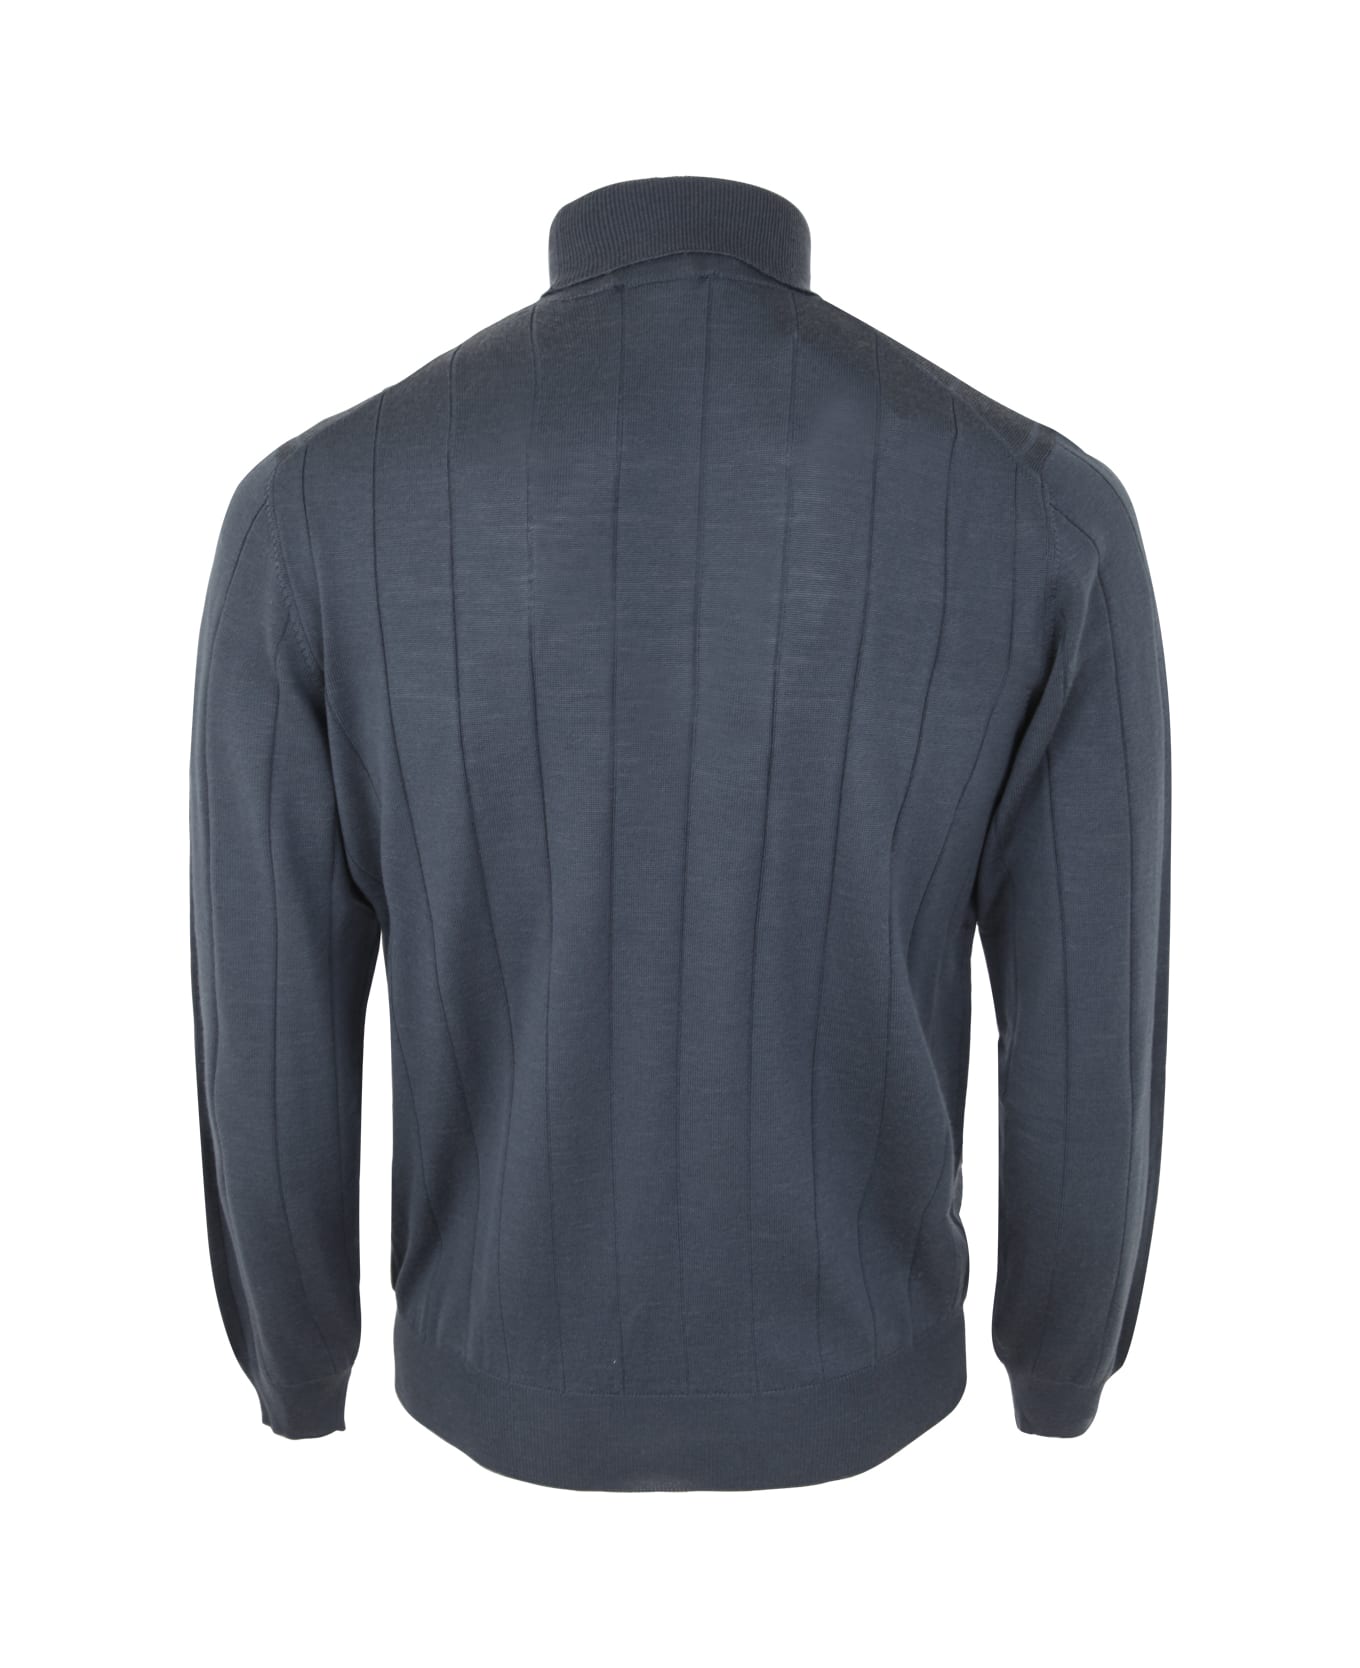 Filippo De Laurentiis Royal Merino Long Sleeves Turtle Neck Sweater - Steel ニットウェア